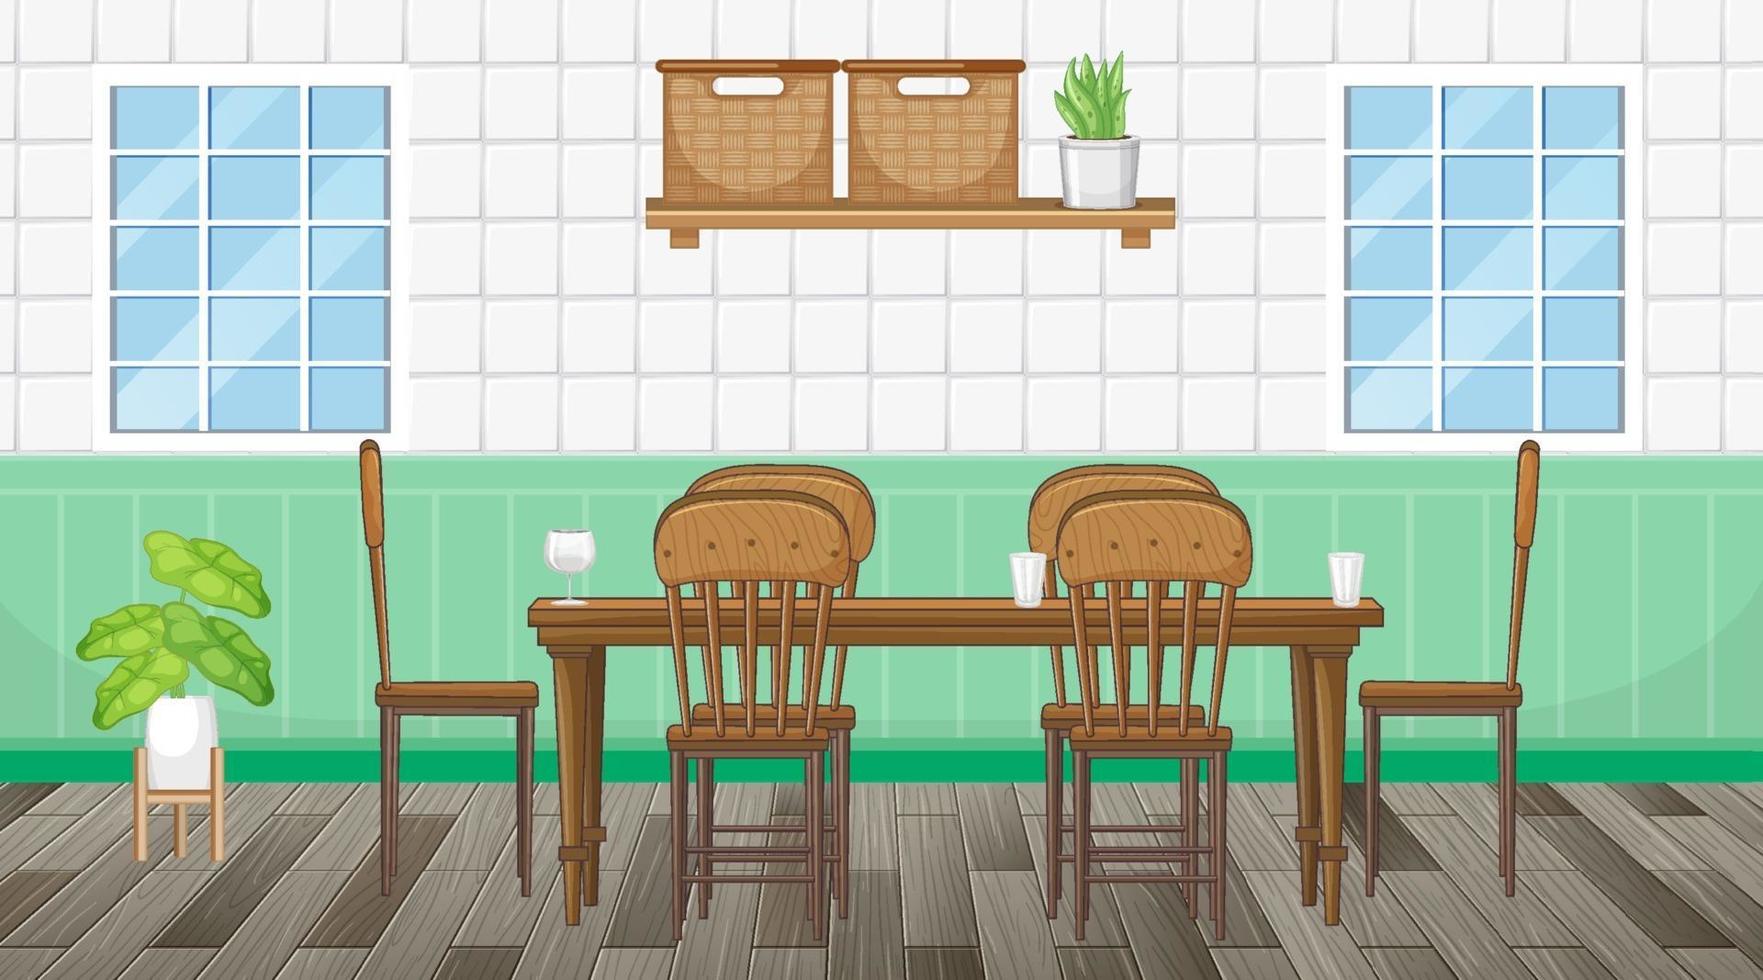 design de interiores de sala de jantar com móveis vetor